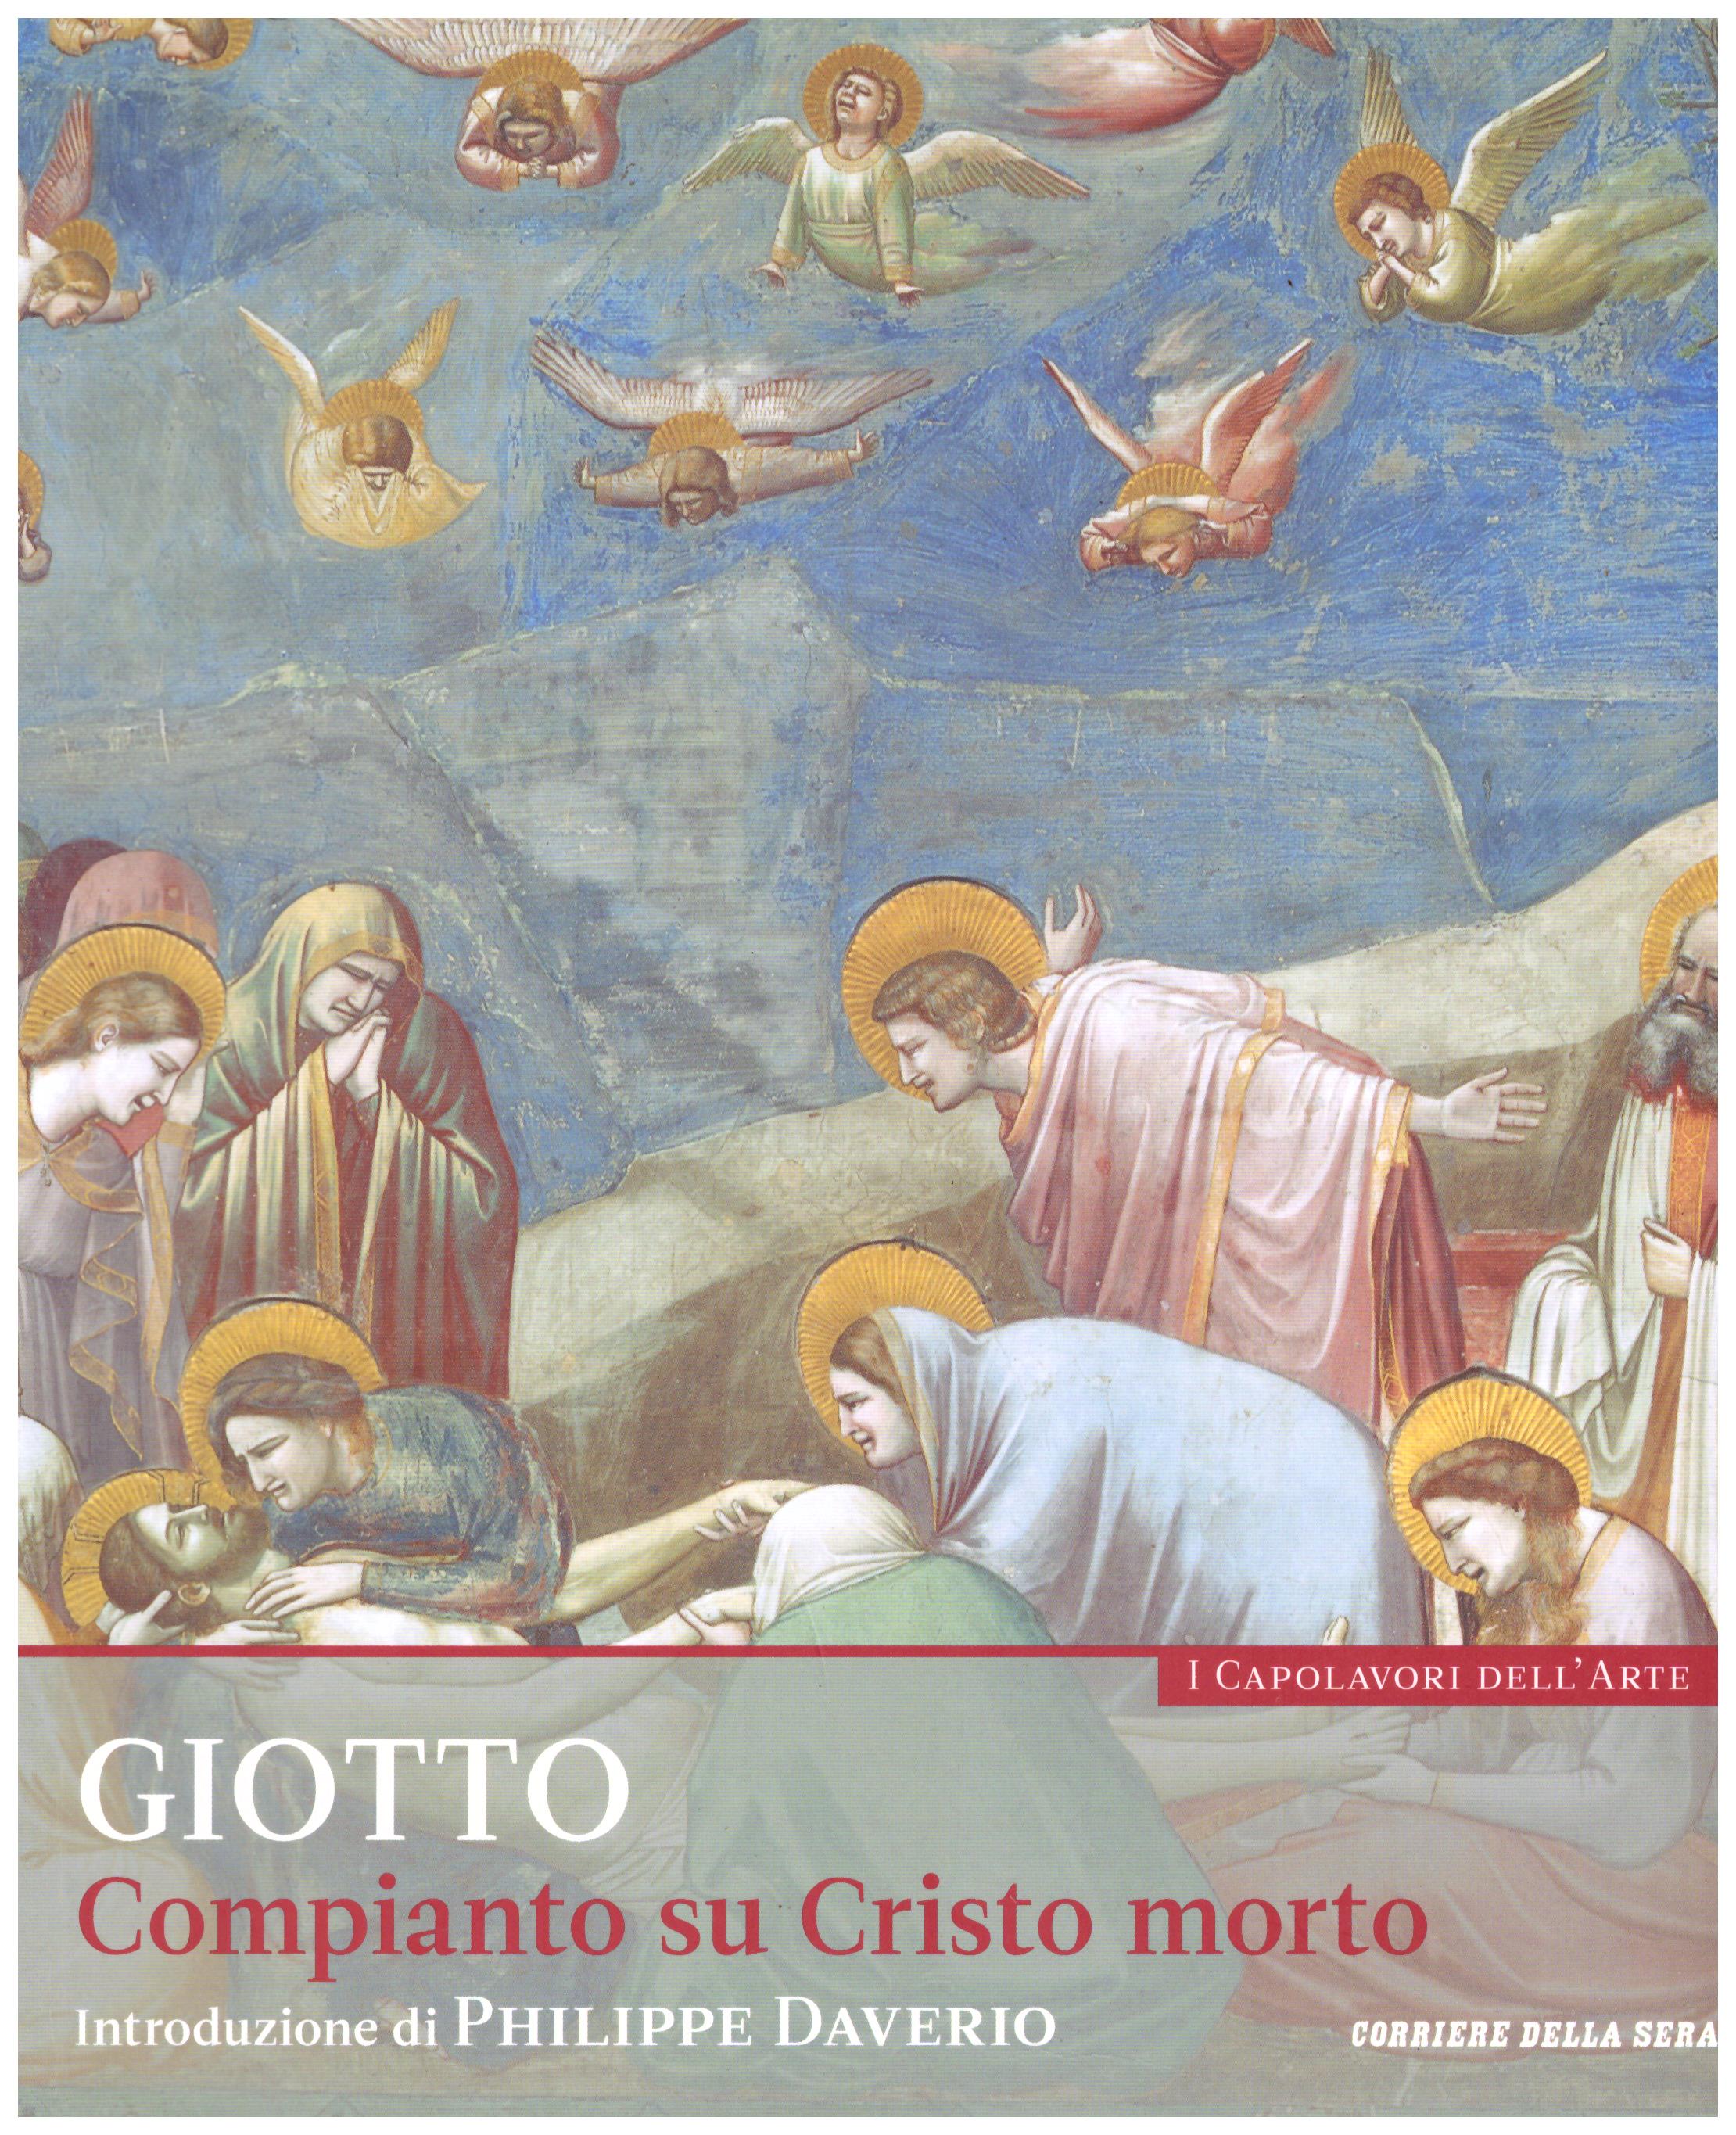 Titolo: I capolavori dell'arte,Giotto  n.19  Autore : AA.VV.   Editore: education,it/corriere della sera, 2015